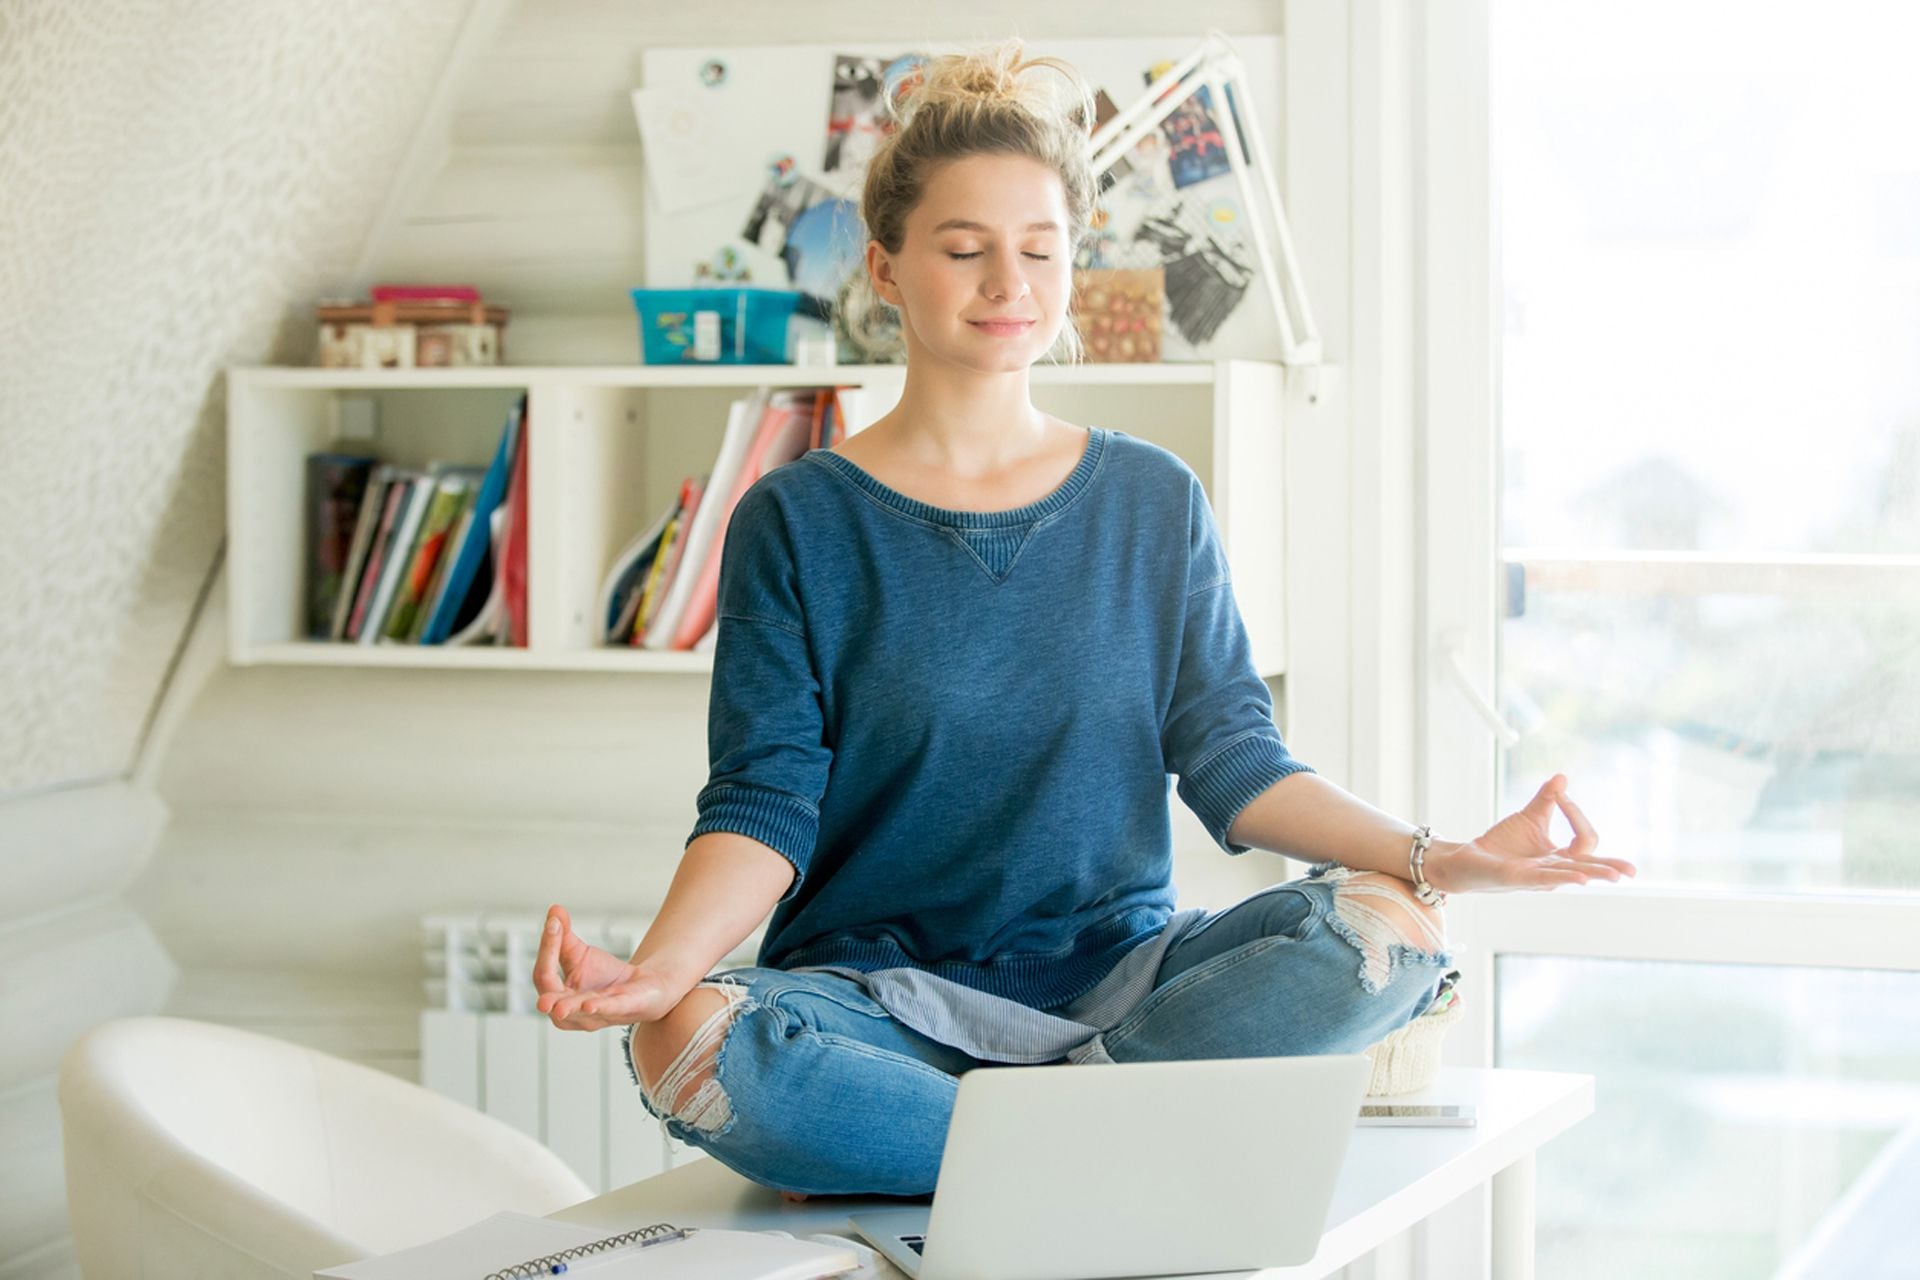 Aprender alguna técnica de relajación, practicar la respiración consciente, el mindfulness o la meditación pueden ayudar a manejar el estrés y evitar el colapso 
(Istock)